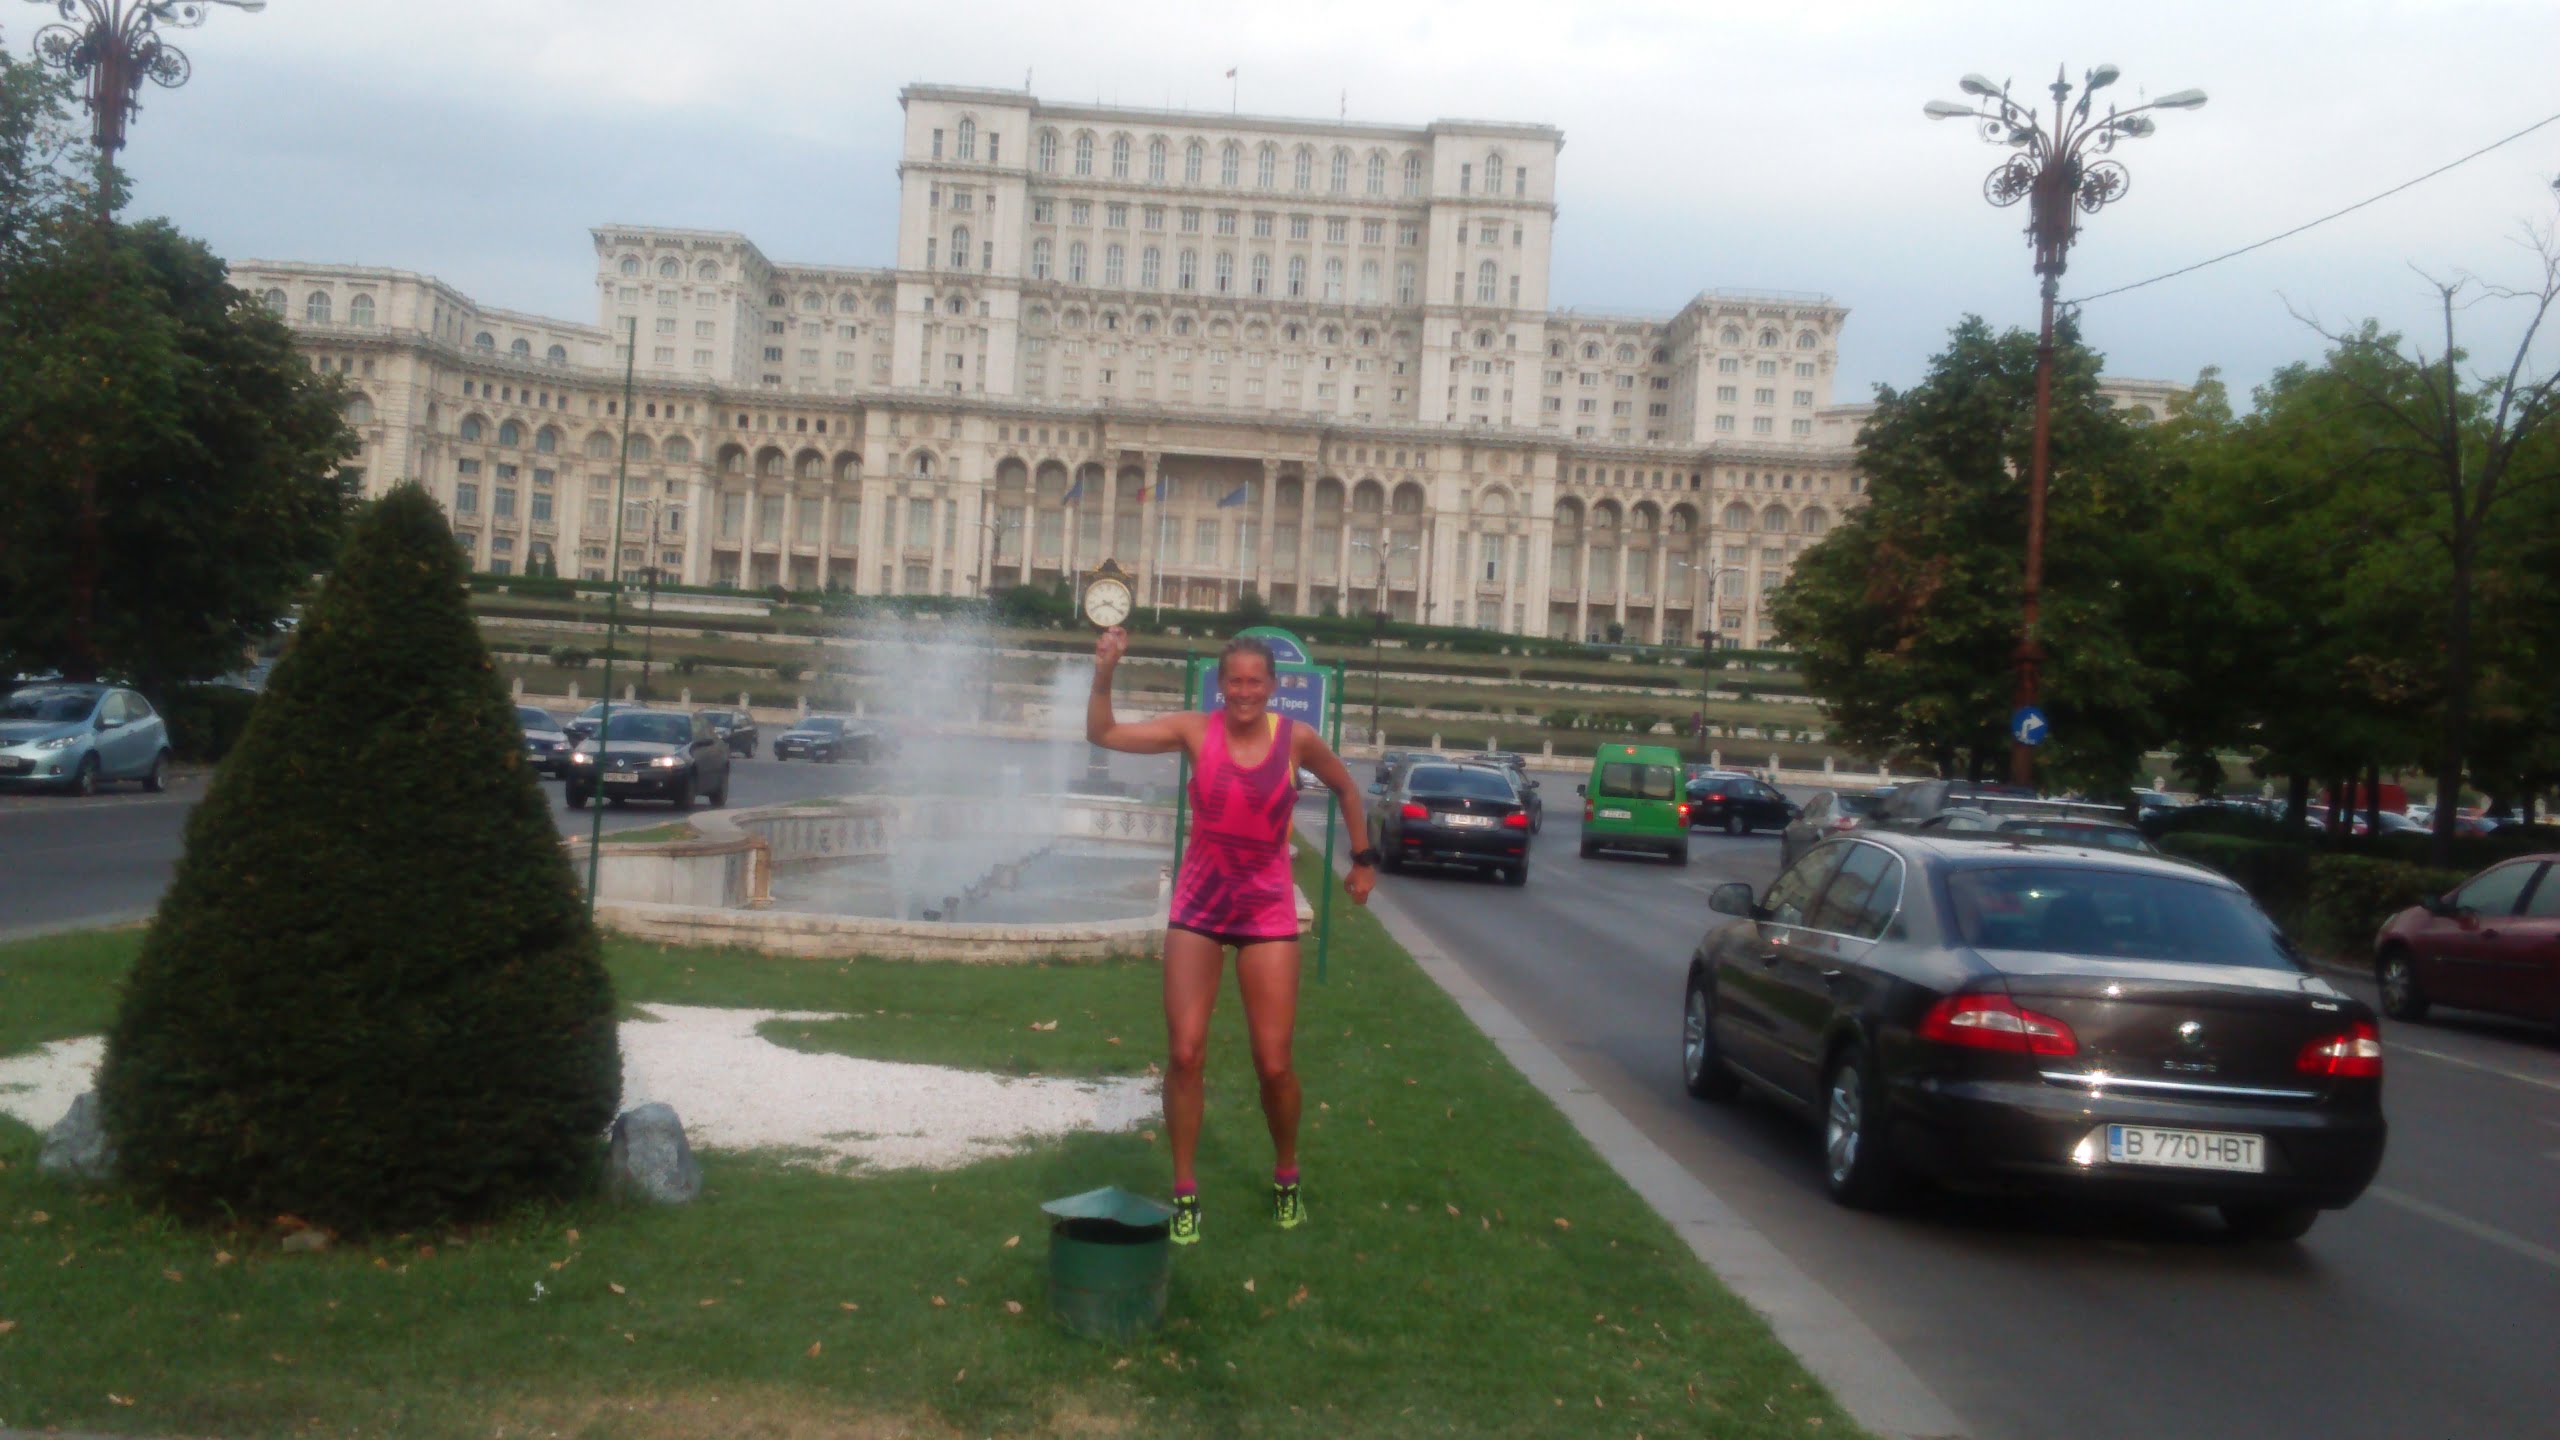 Jag fick ihop mina 30 kilometer och avslutade vid det enorma Parlamentspalatset som Ceausescu lät uppföra och under kommunisttiden kallades för folkets palats. Det är en av de dyraste byggnader som någonsin byggs och den näst största administrativa byggnaden i världen efter Pentagon. Den började byggas 1984 och innan dess förstördes stora delar av det historiska Bukarest som låg på platsen.